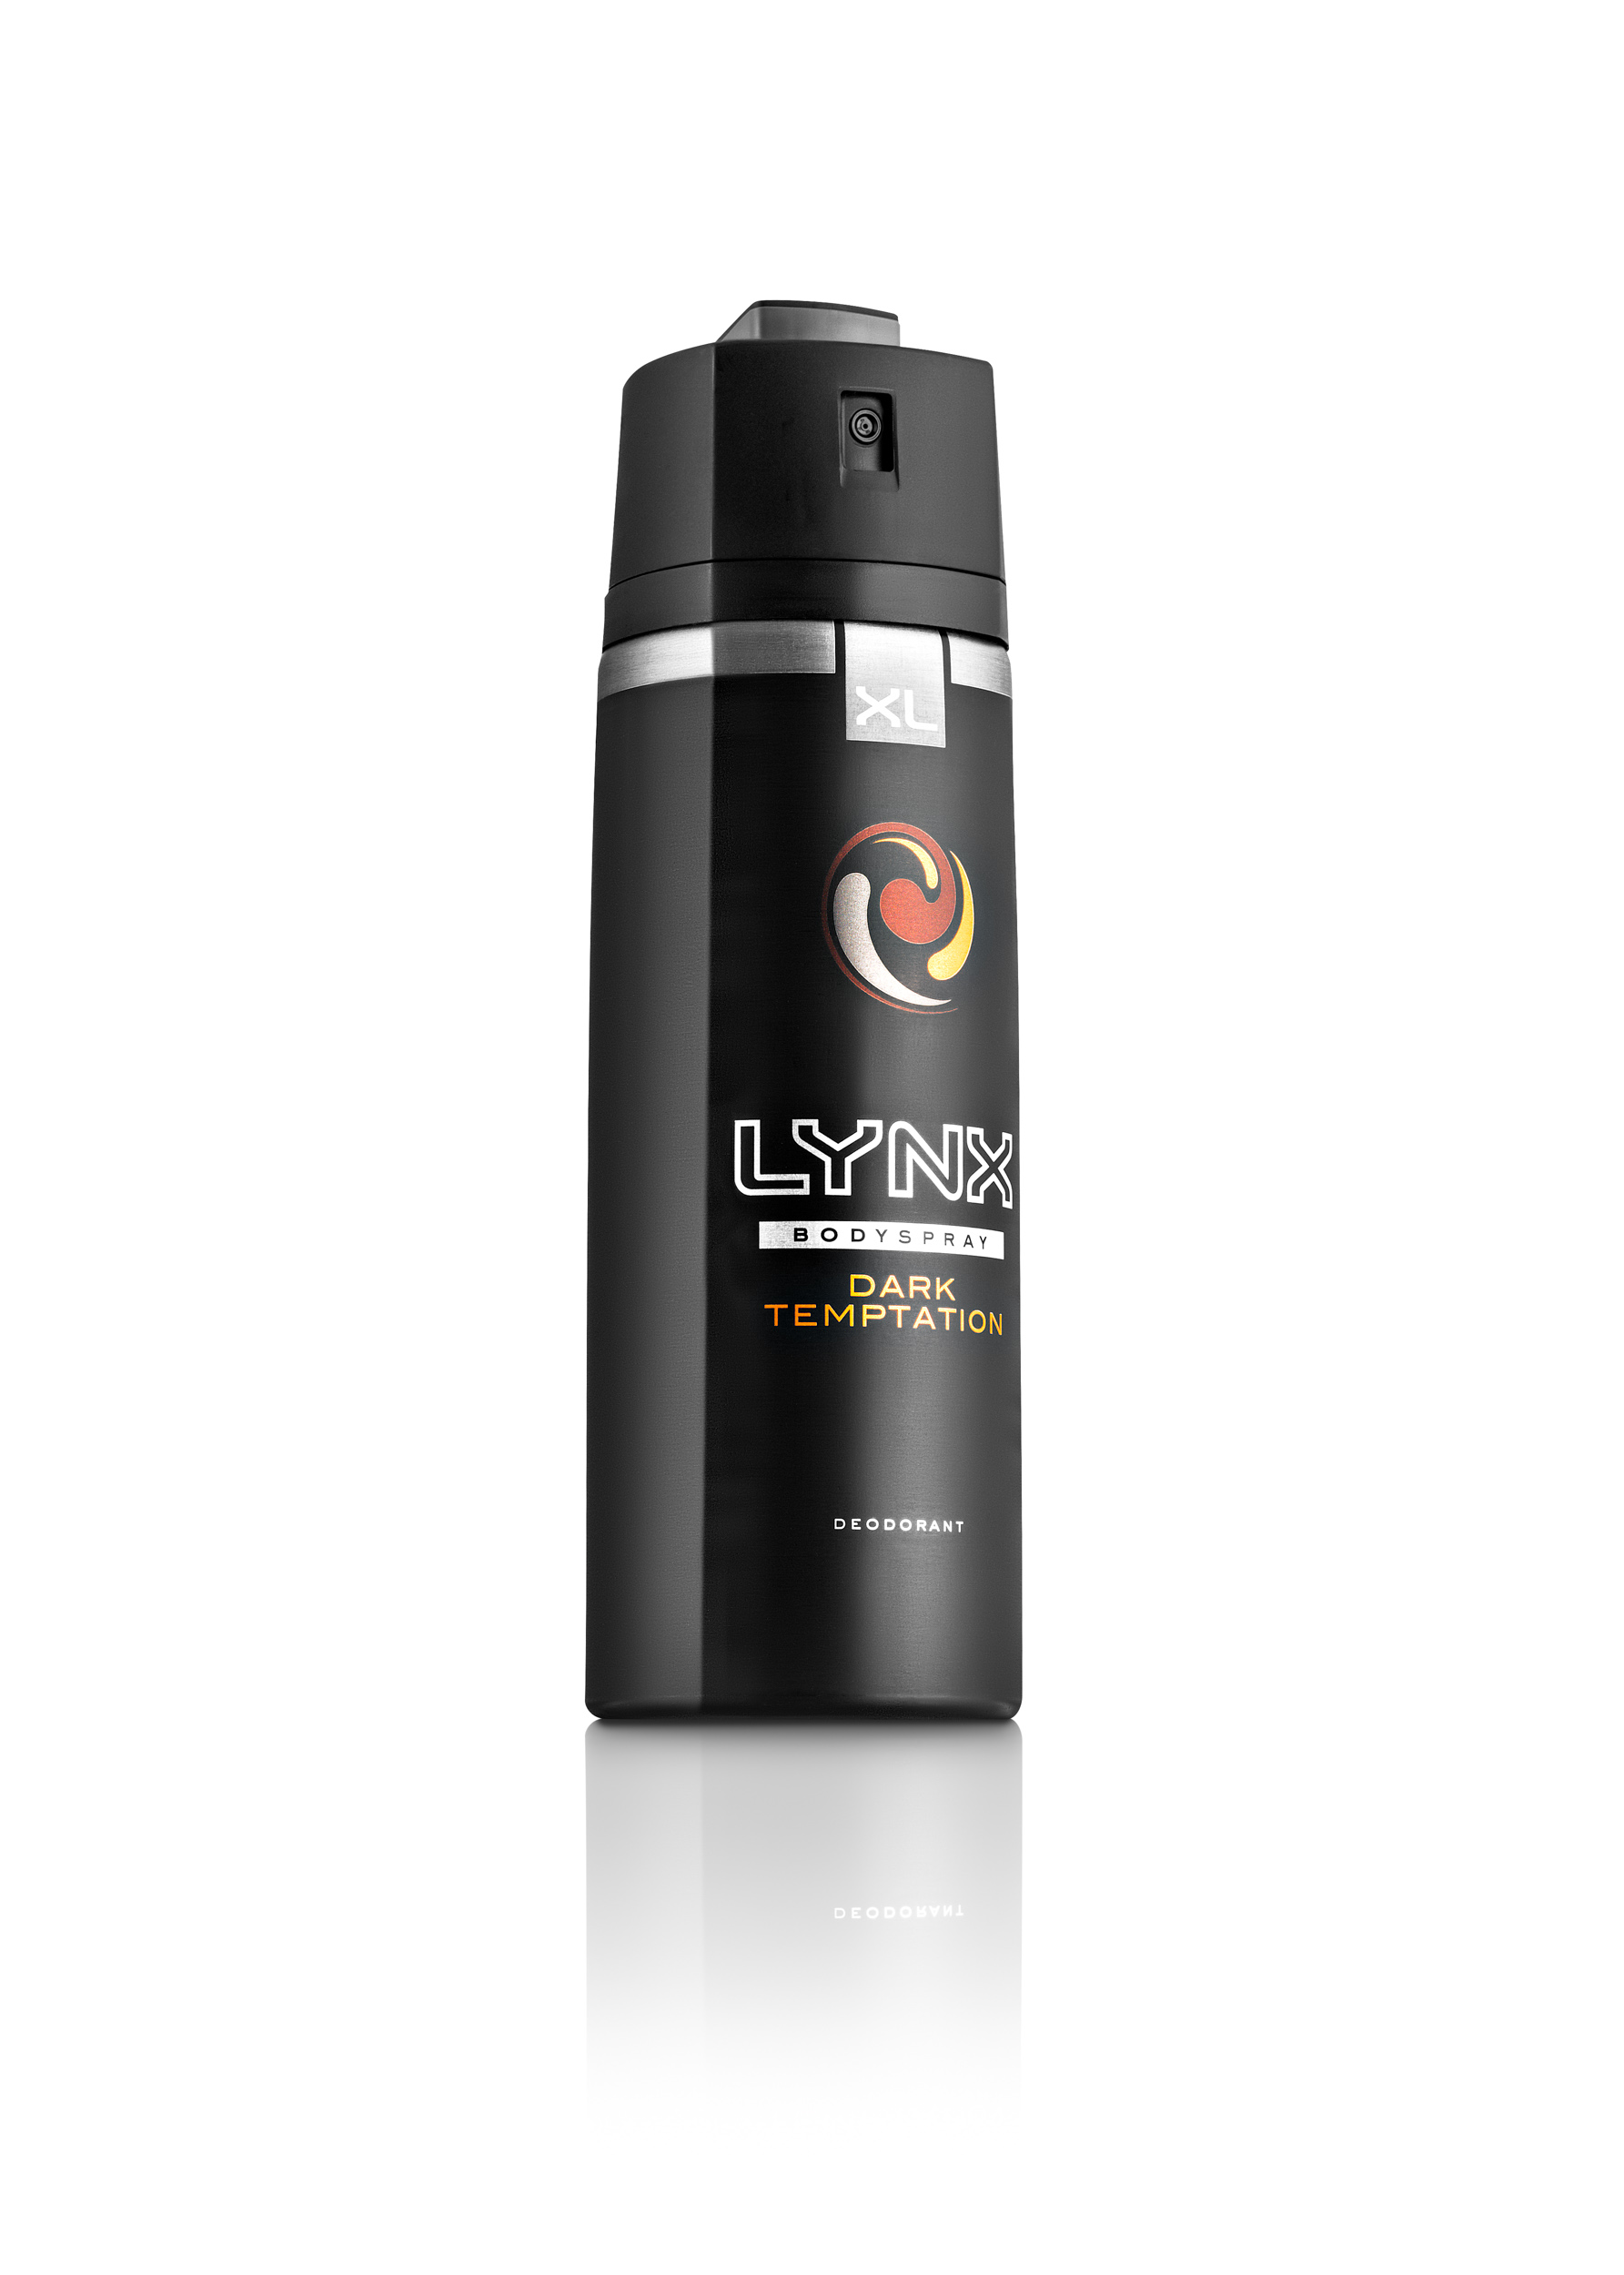 LYNX Dark Temptation Body Spray | Pack Shot 